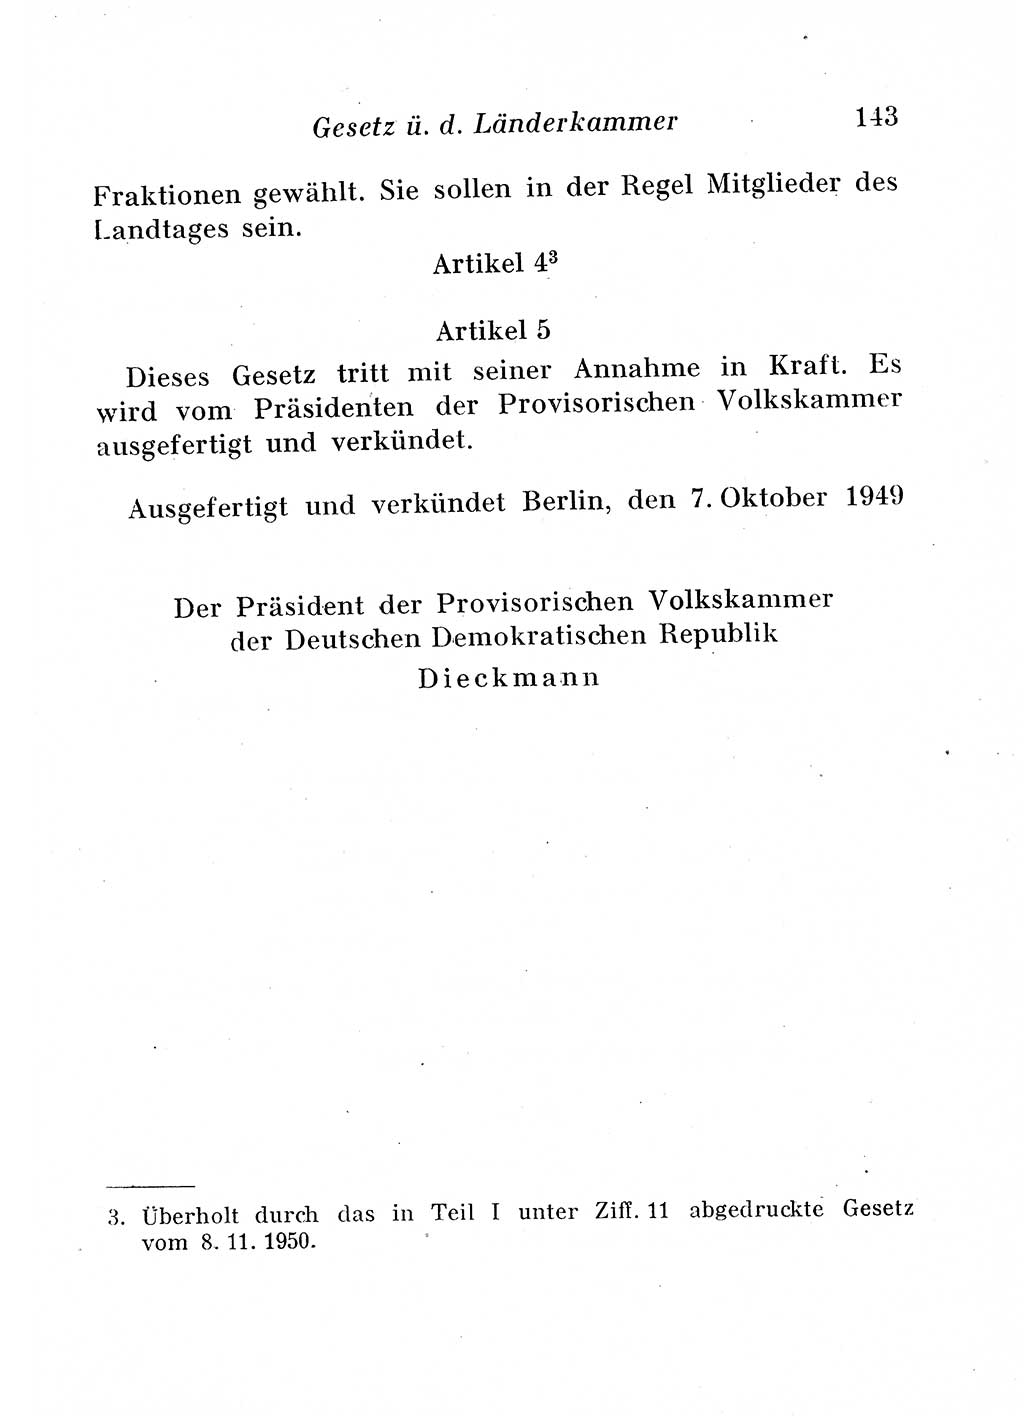 Staats- und verwaltungsrechtliche Gesetze der Deutschen Demokratischen Republik (DDR) 1958, Seite 143 (StVerwR Ges. DDR 1958, S. 143)